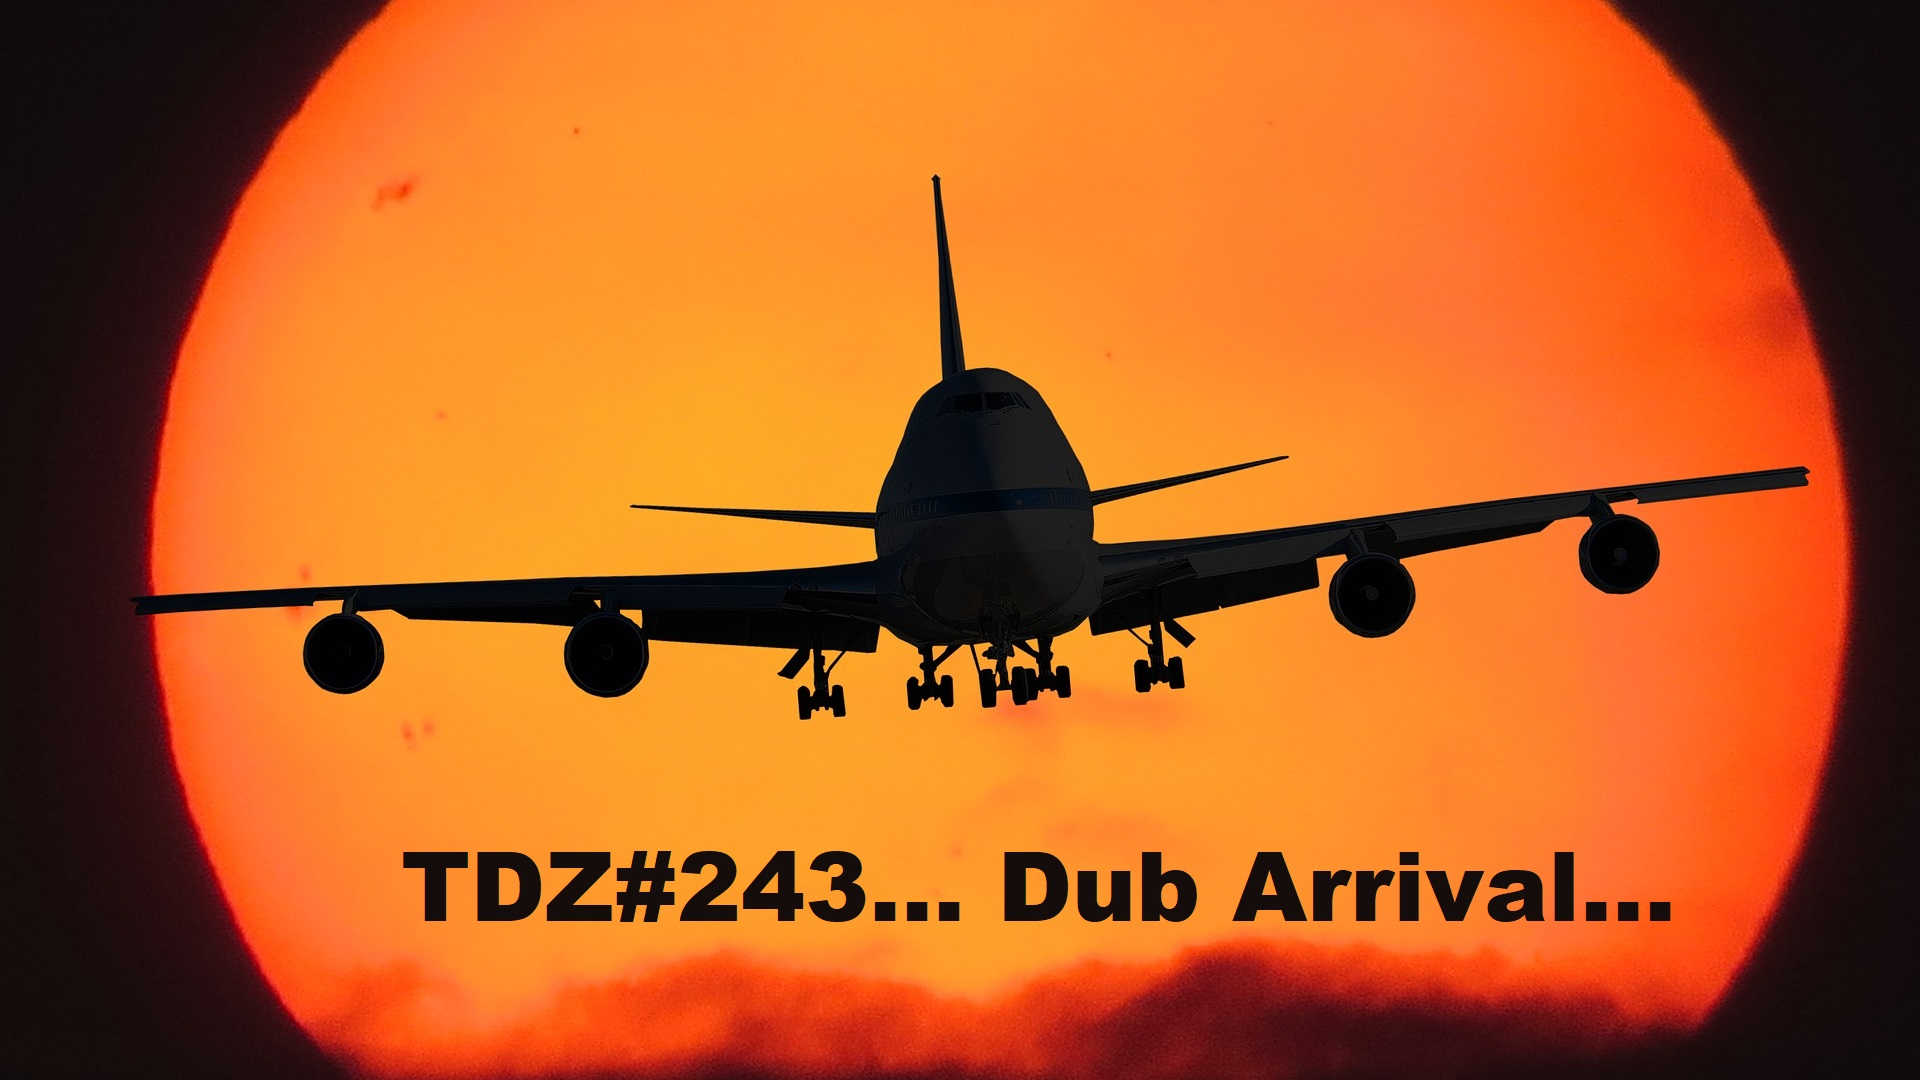 TDZ#243... Dub Arrival...